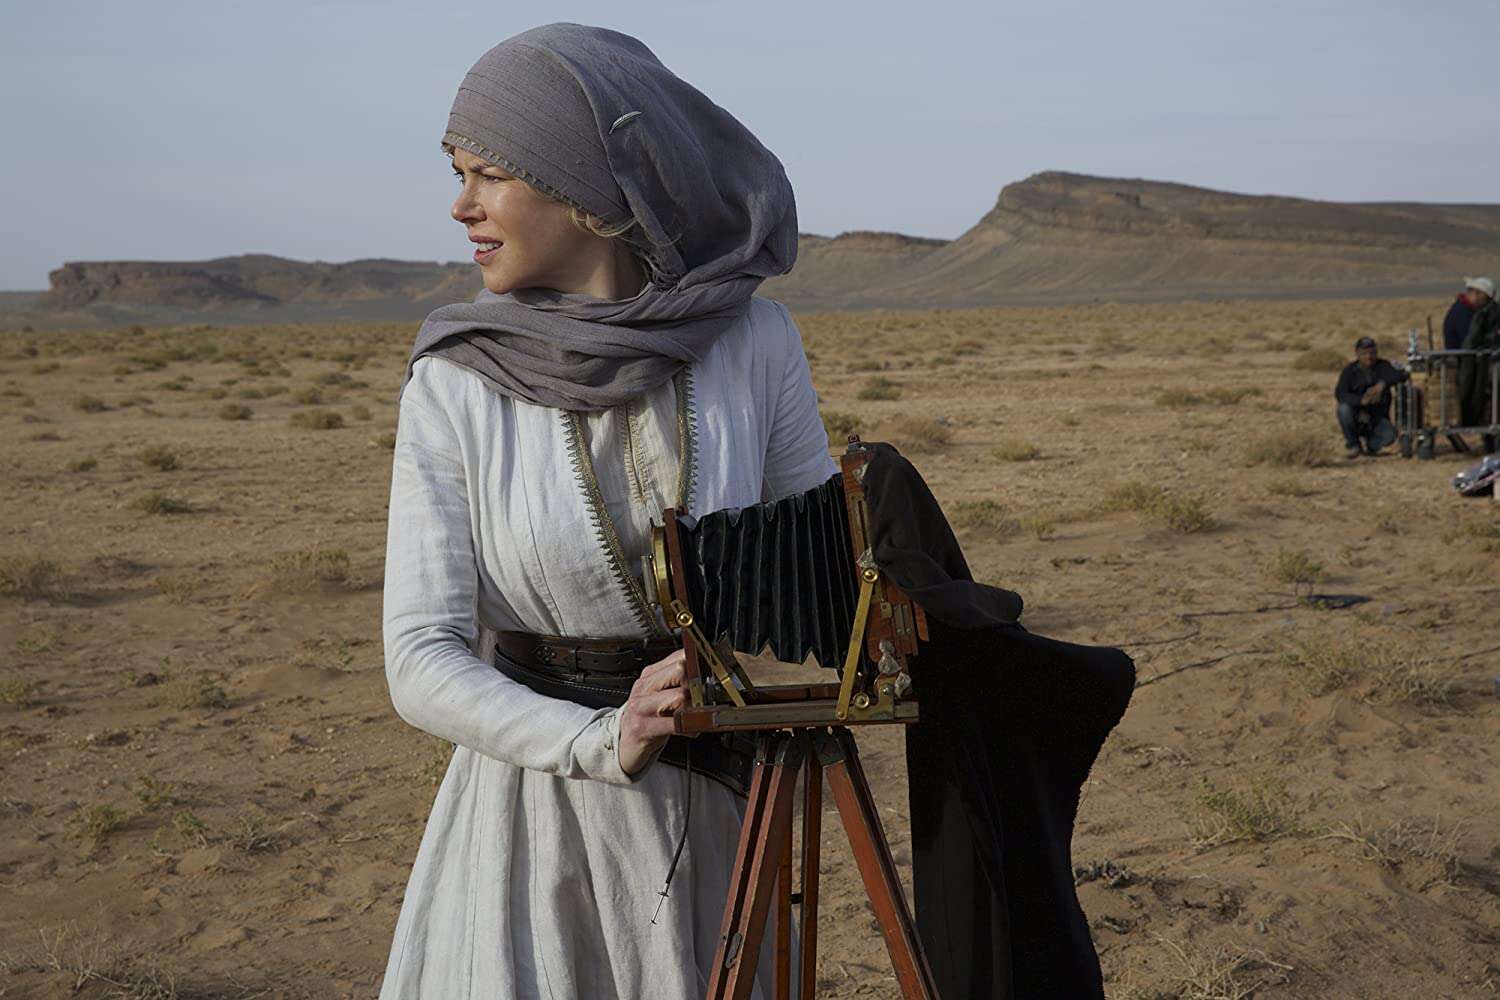 Queen of the Desert, 2015